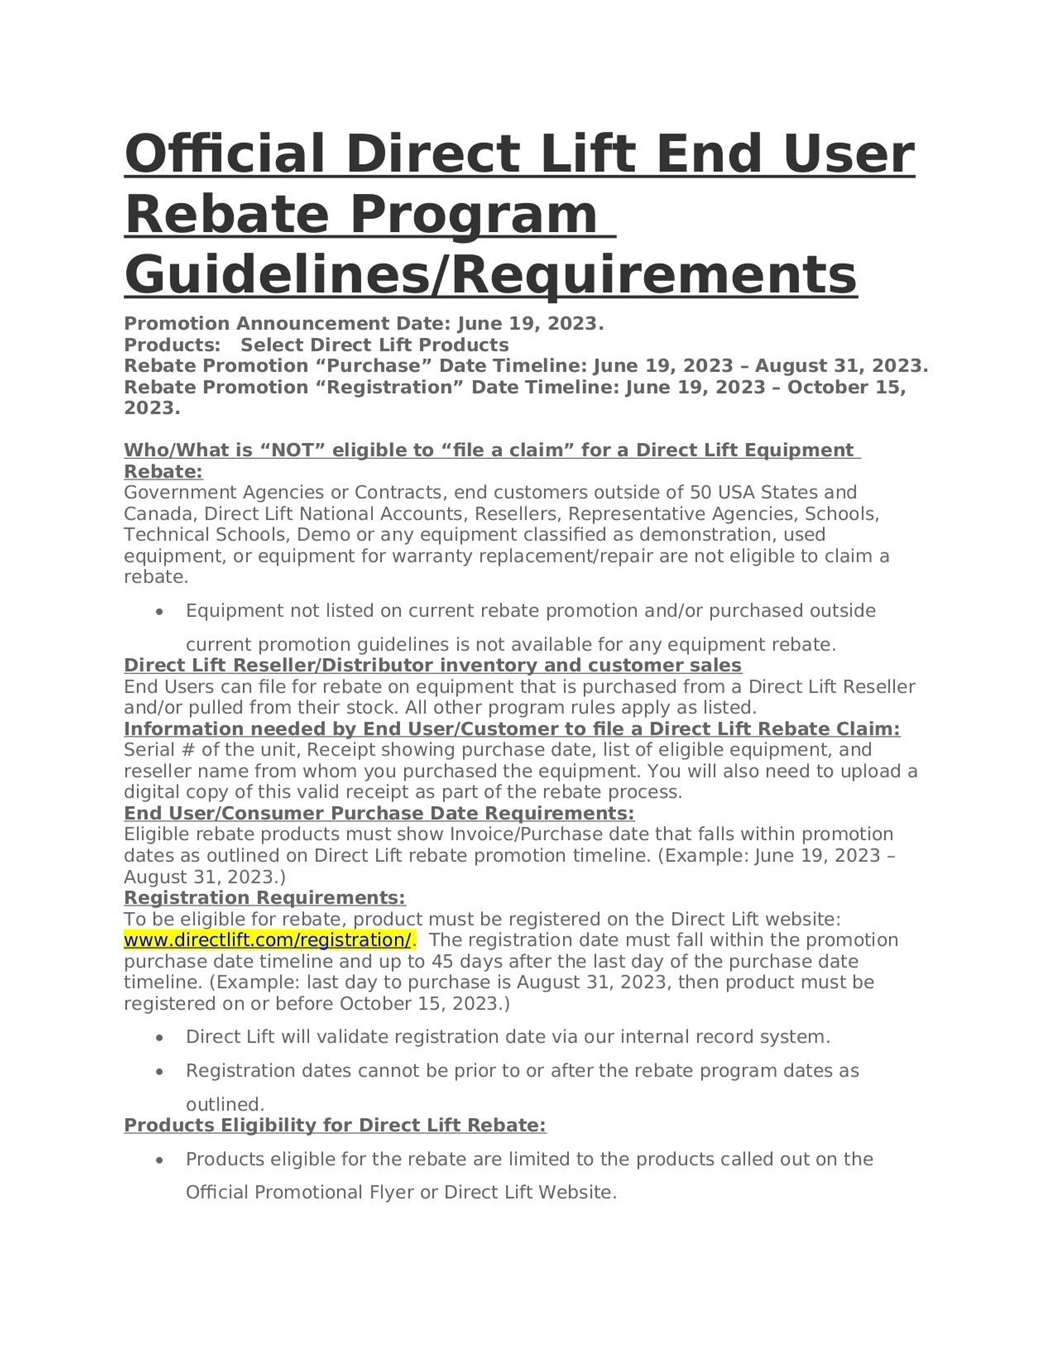 Rebate Program